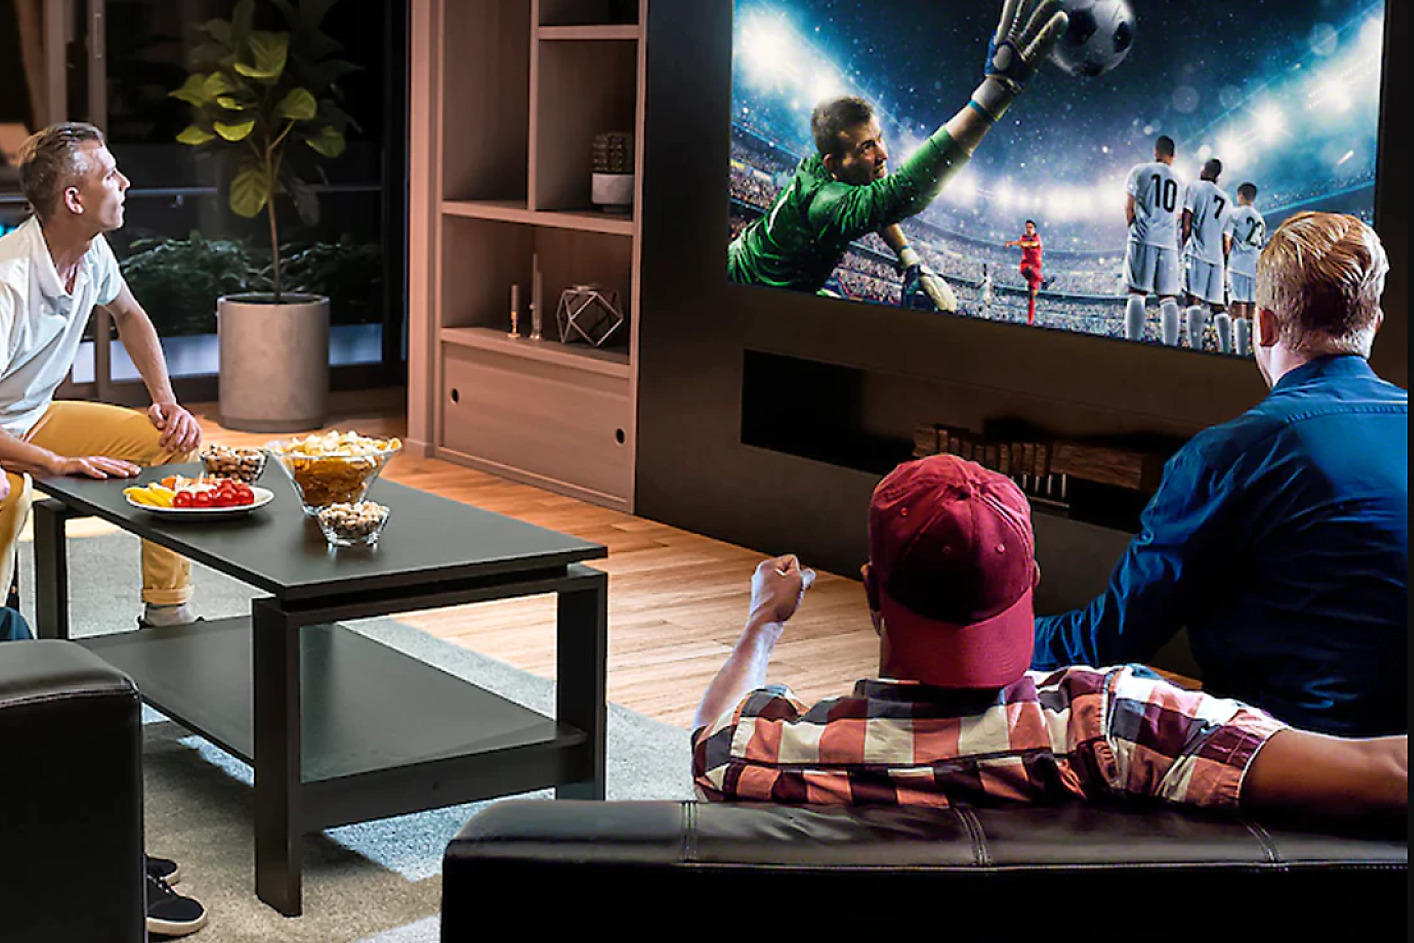 Traja ľudia v obývačke sledujúci televízor, v ktorom skáče brankár a snaží sa chytiť futbalovú loptu.